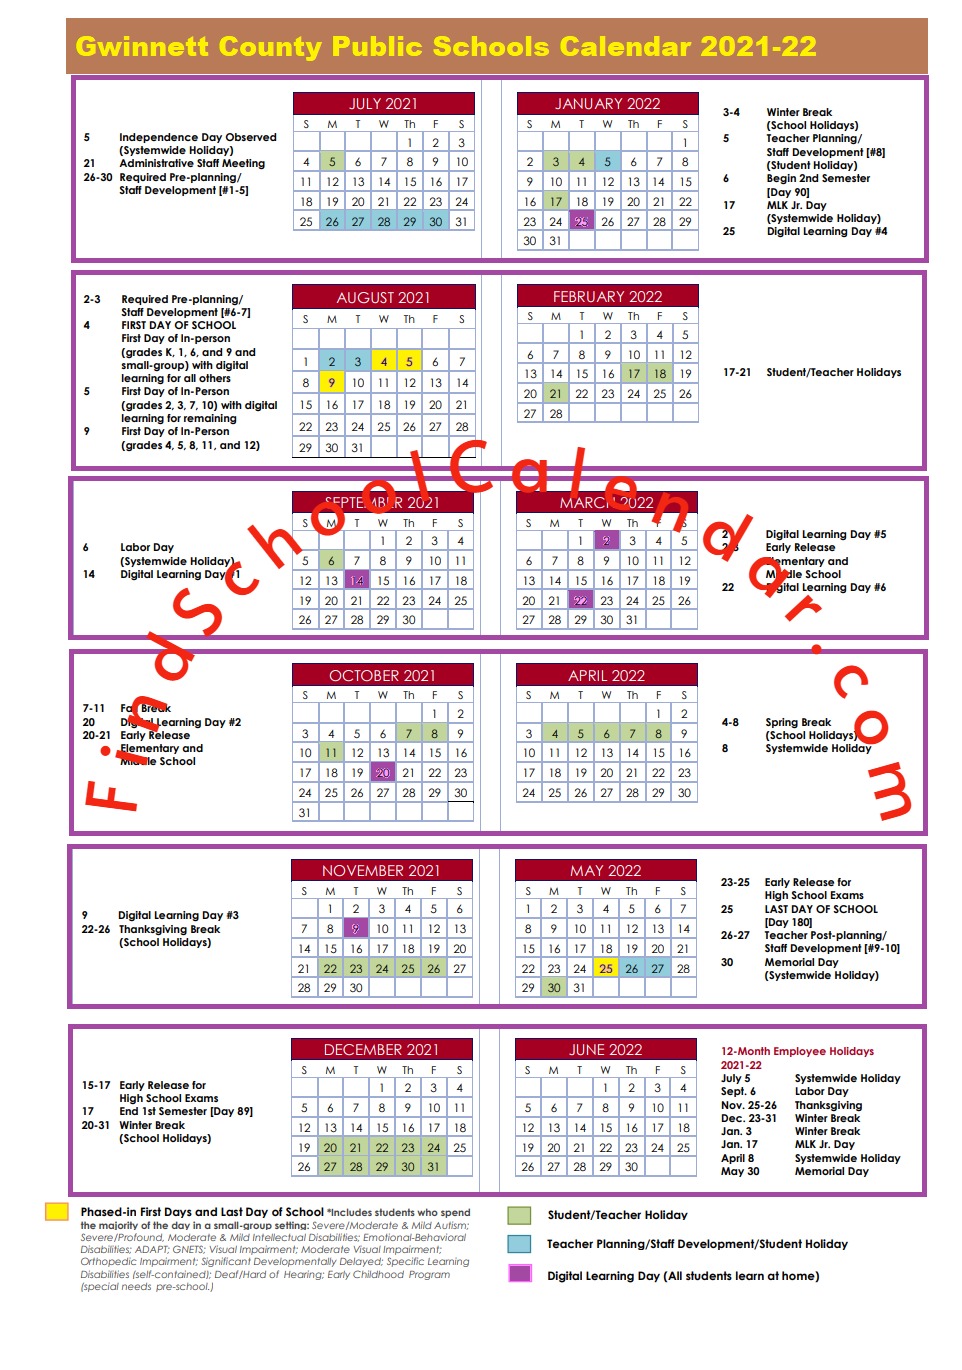 Gwinnett Calendar 2022 Gwinnett County School Calendar 2021-2022 | Holidays & Break Schedule